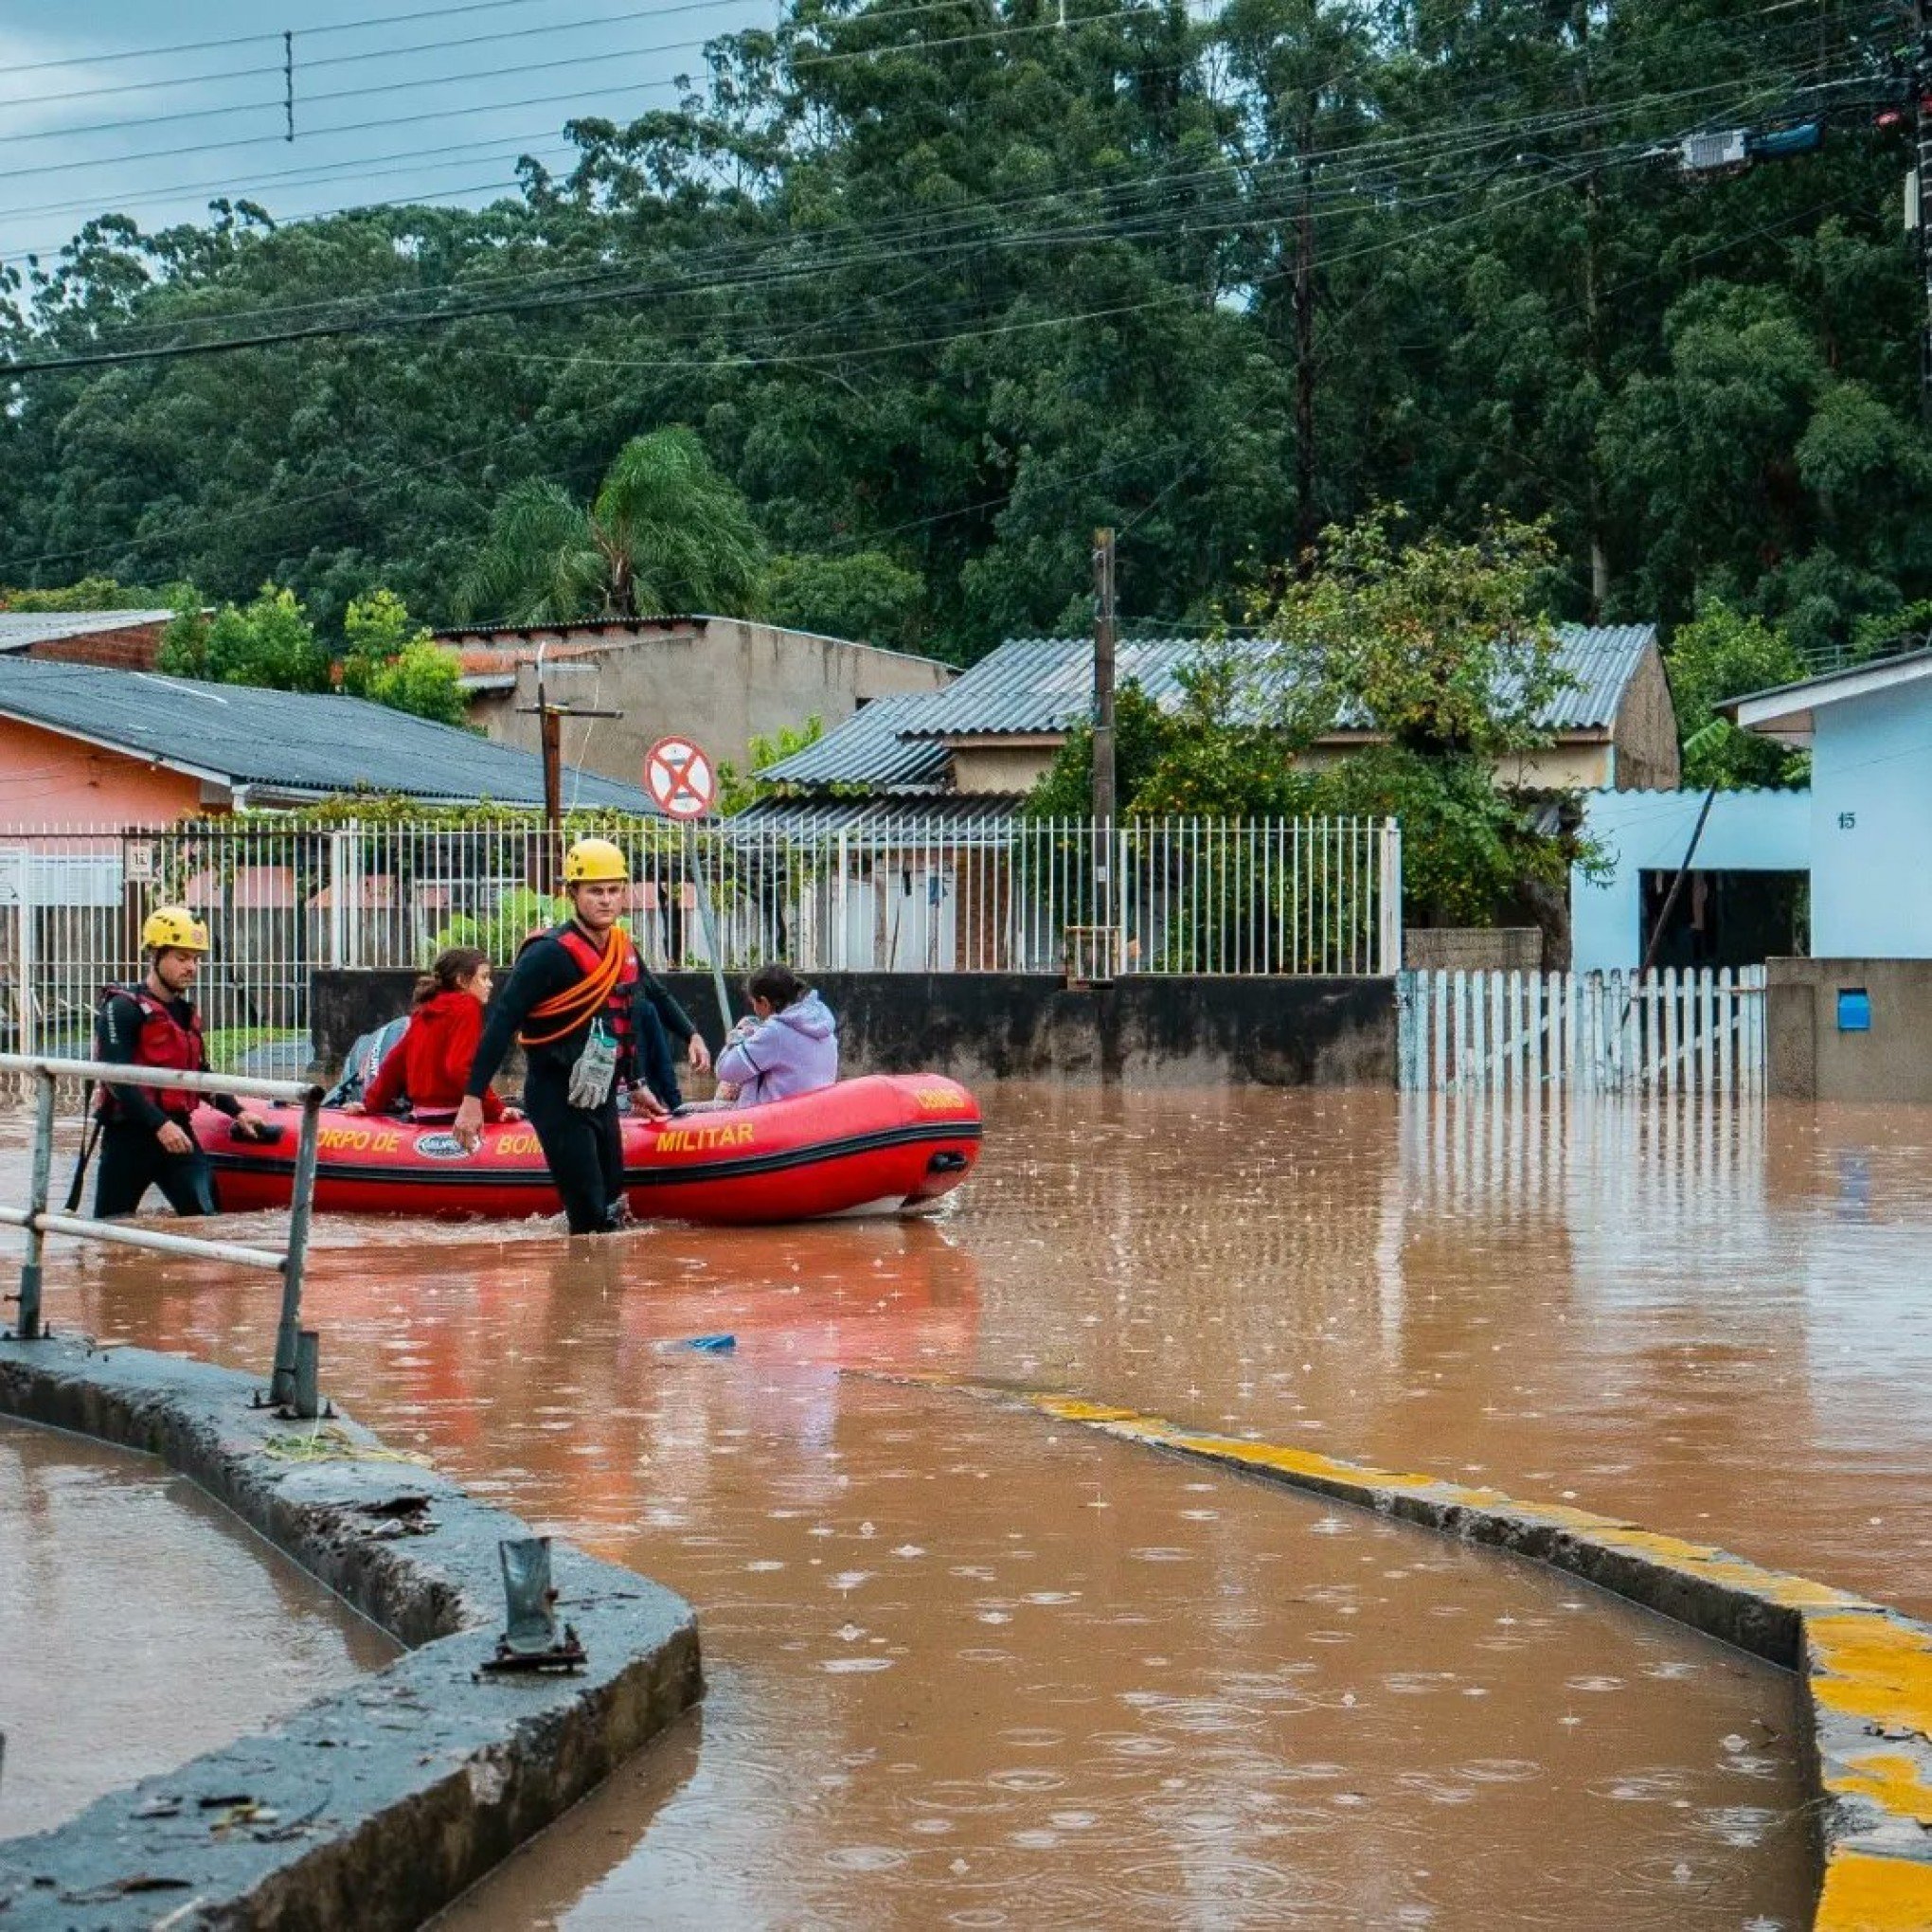 TEMPESTADE: Quase 20 desaparecidos e 3 mortes; o que aconteceu na tarde desta terça-feira de chuva no RS?